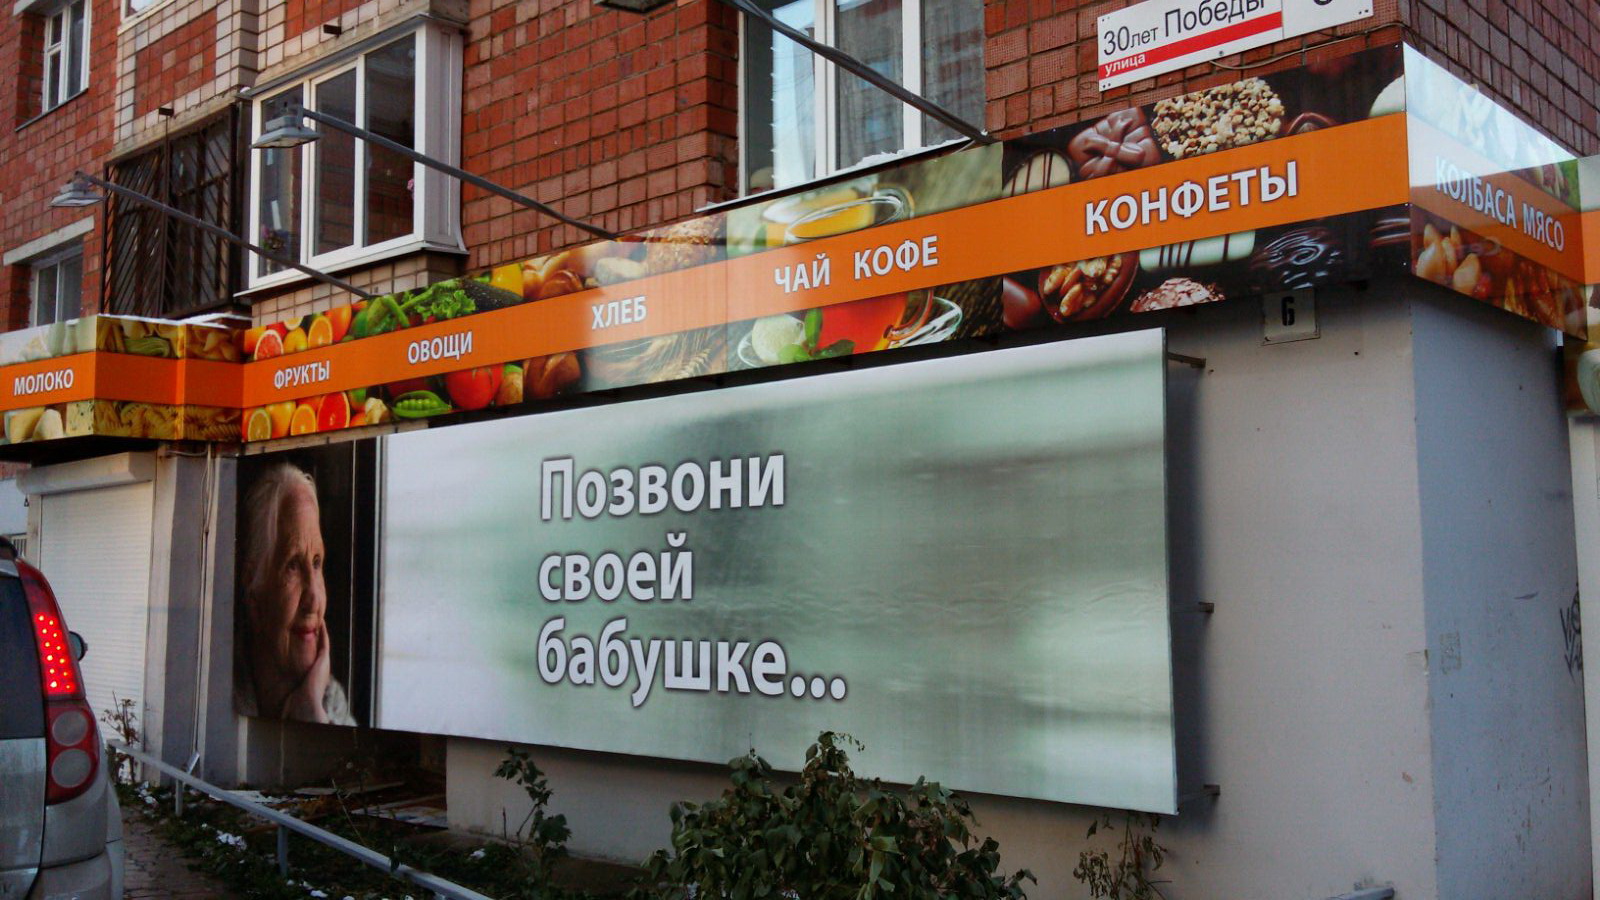 Оформление продуктового магазина Ижевск